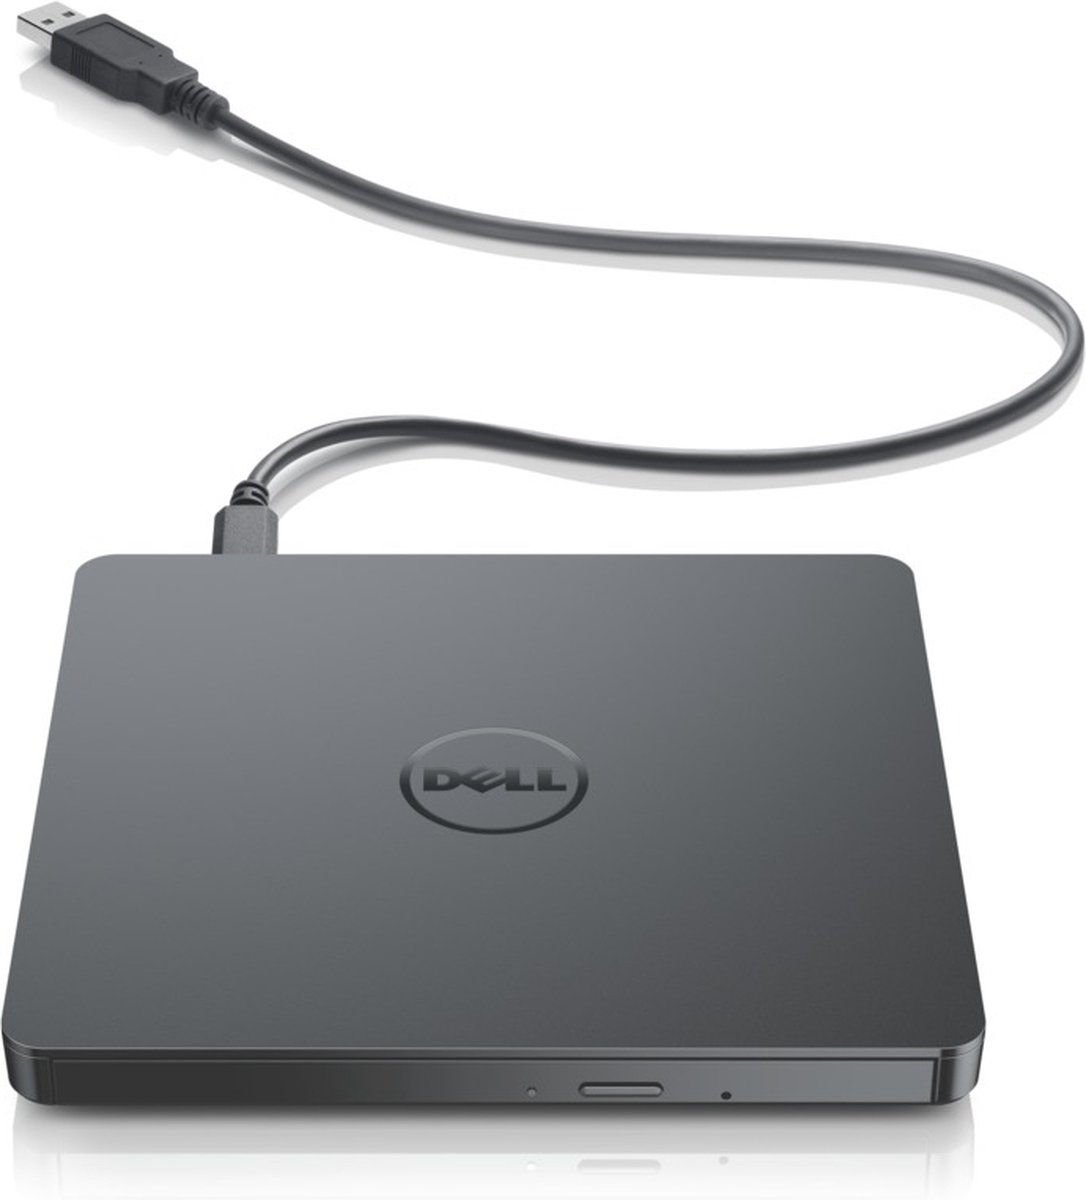 Dell USB DVD Drive-DW316